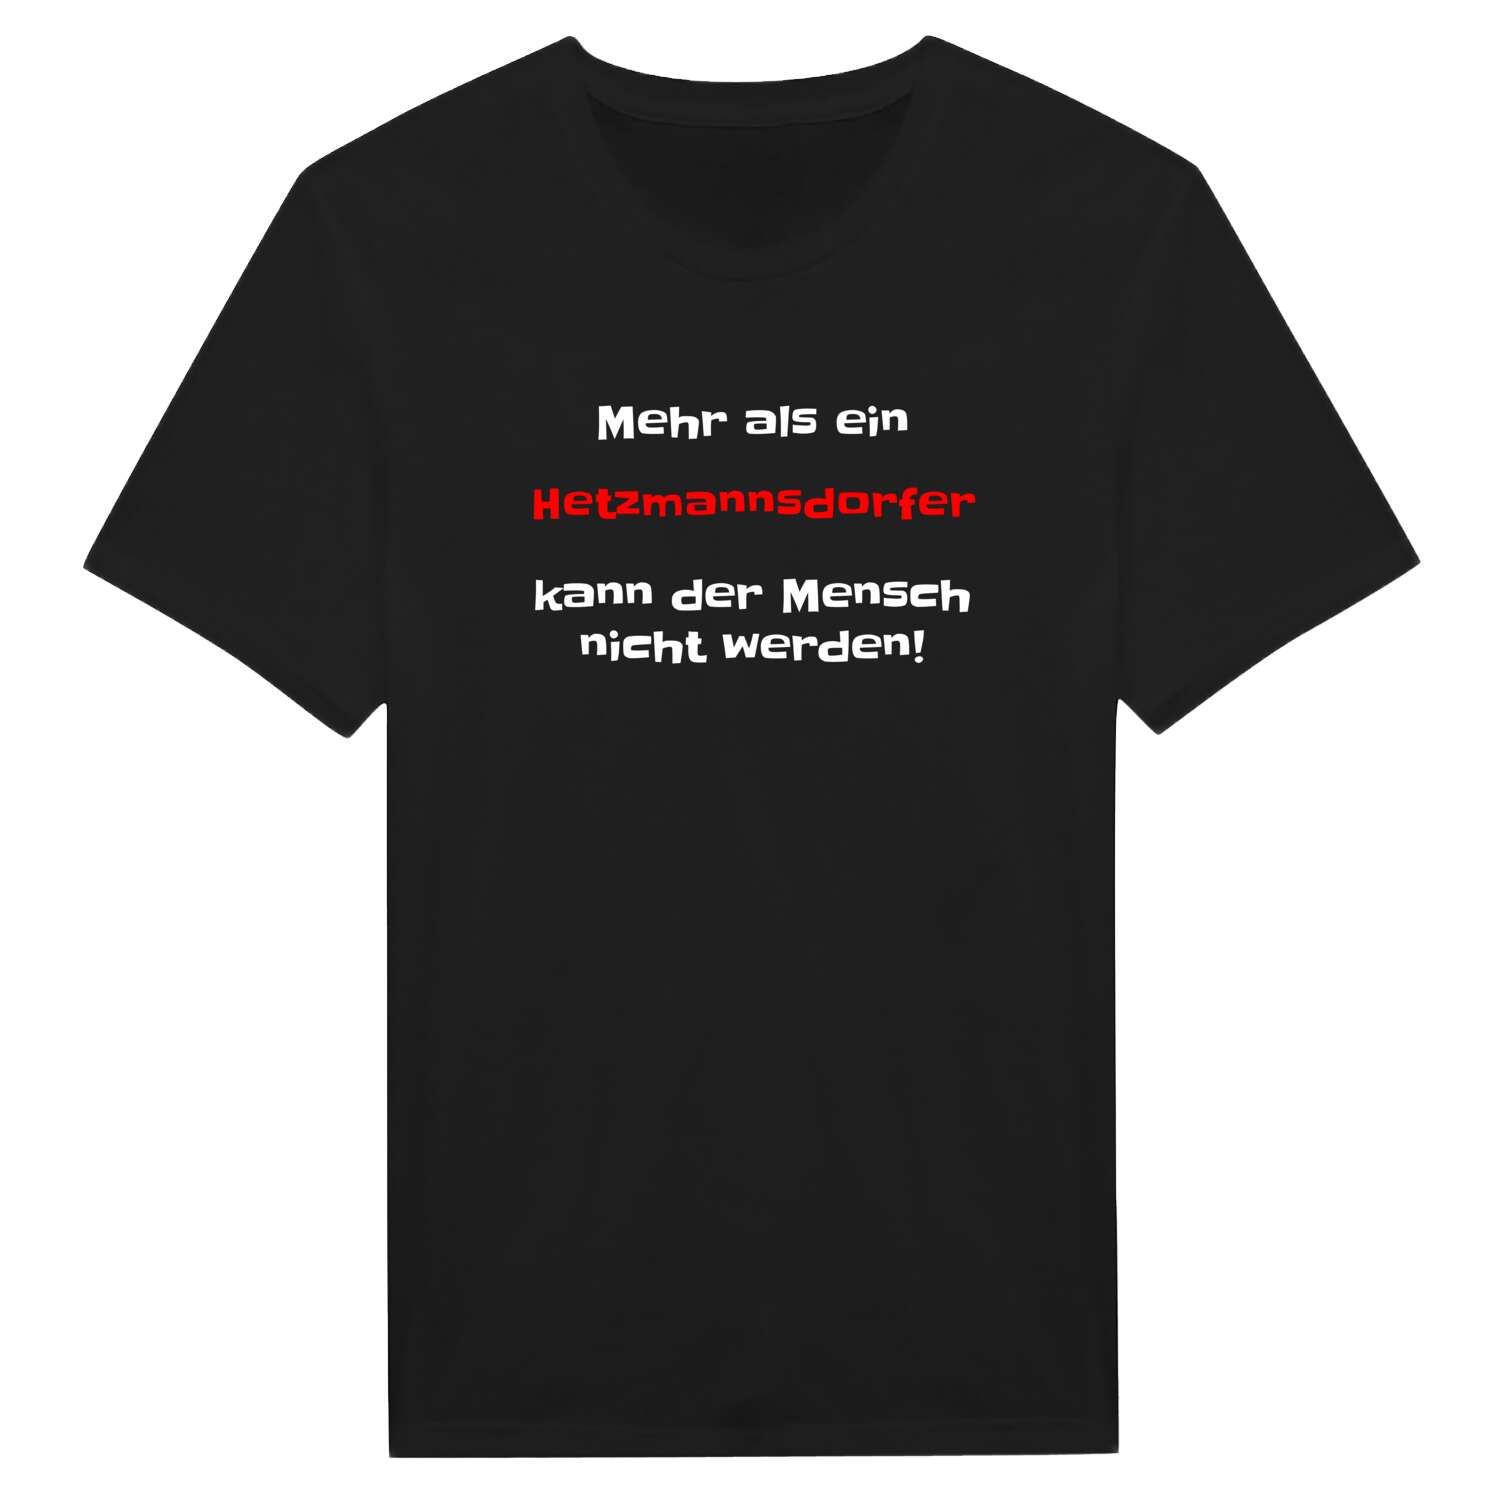 Hetzmannsdorf T-Shirt »Mehr als ein«